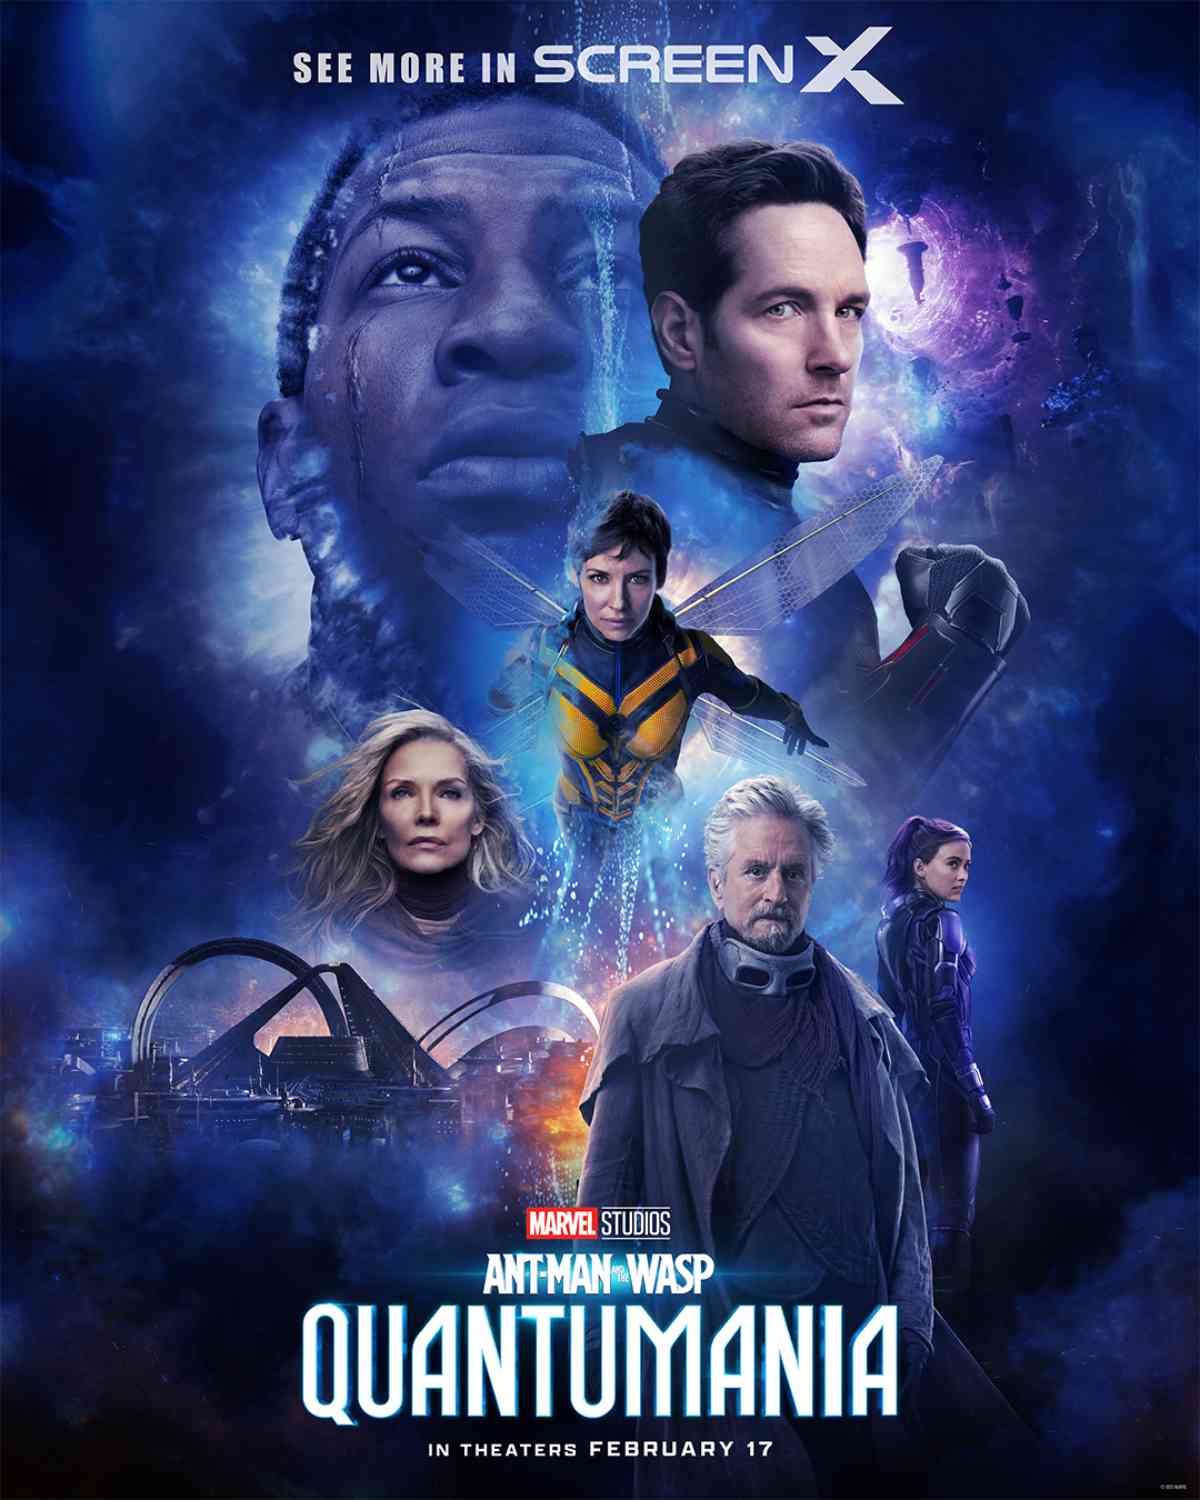 Quantumania Trailer